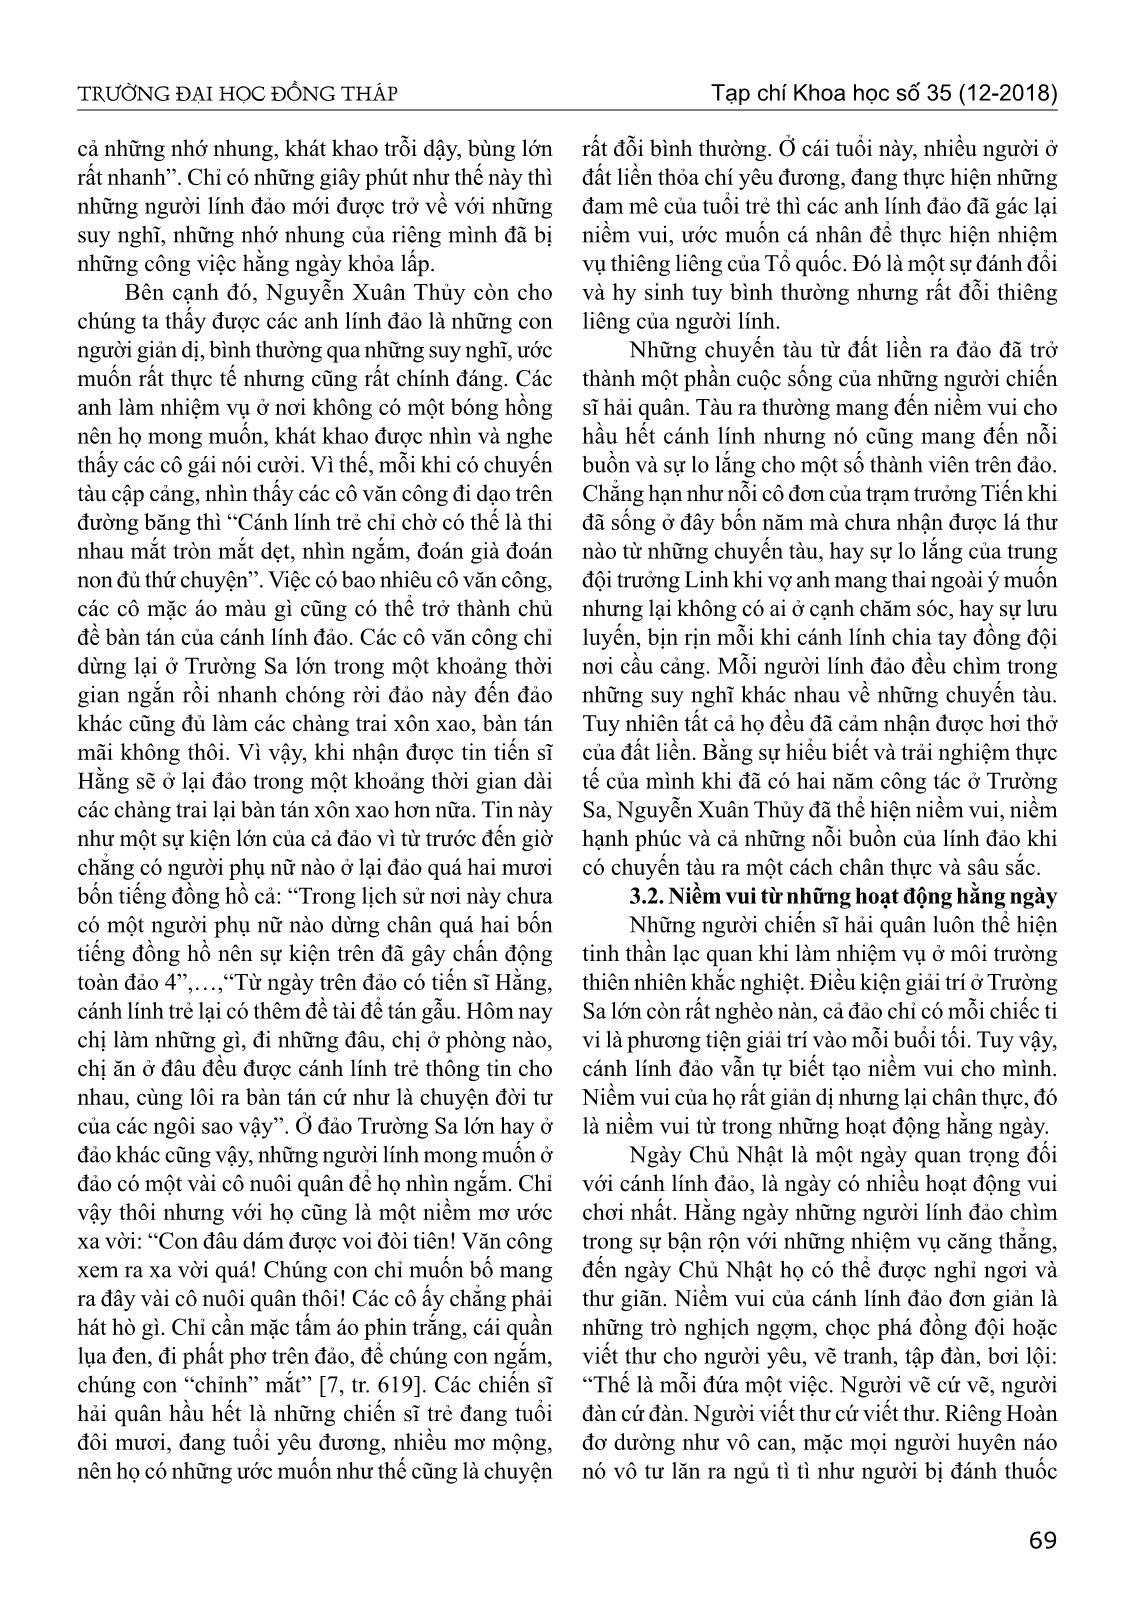 Chân dung người lính biển trong tiểu thuyết biển xanh màu lá của Nguyễn Xuân Thủy trang 6